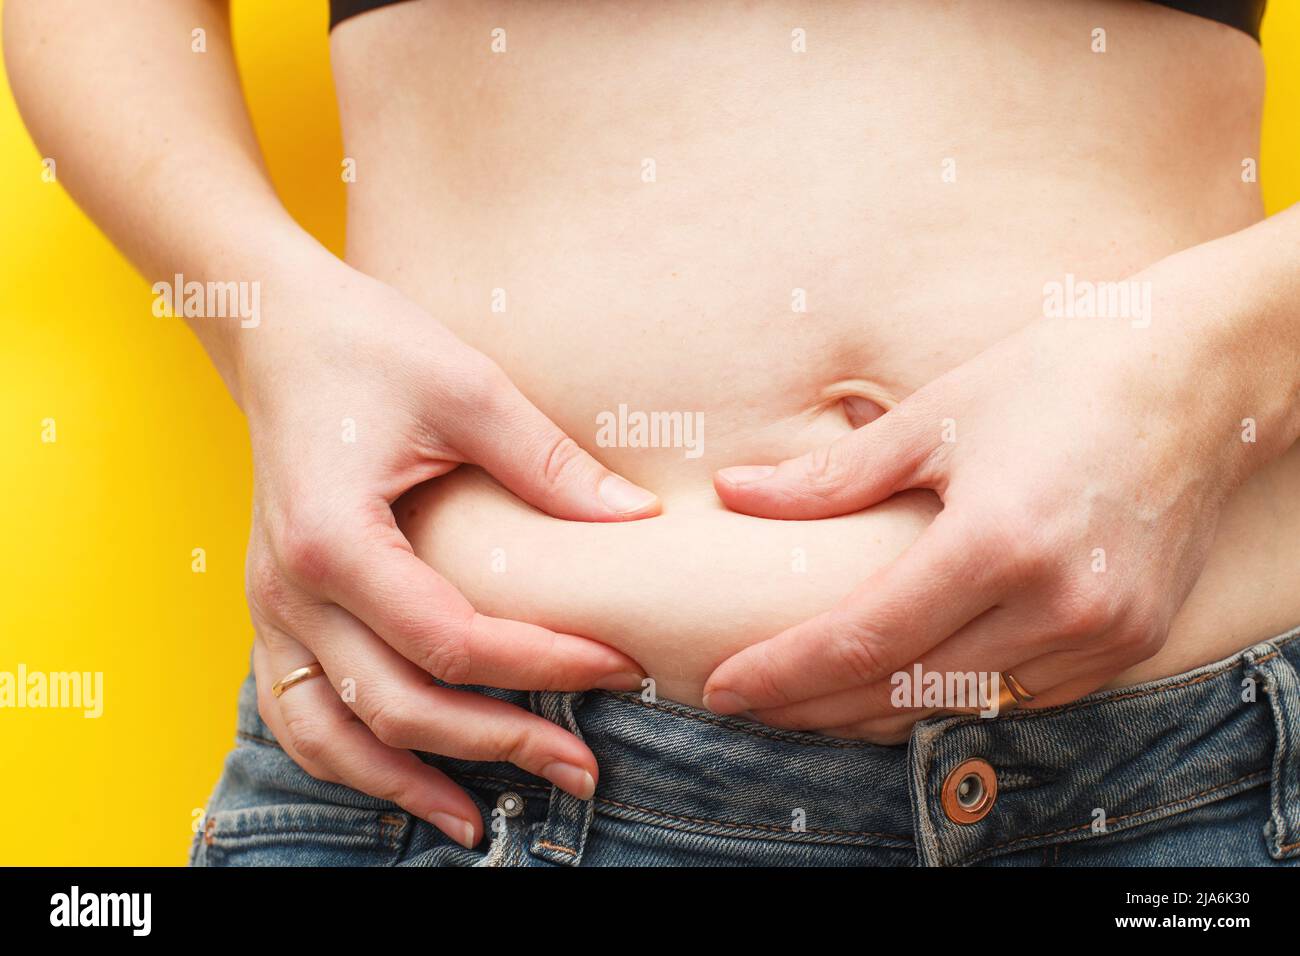 Las manos de la mujer comprimen la grasa de su vientre sobre un fondo amarillo Foto de stock